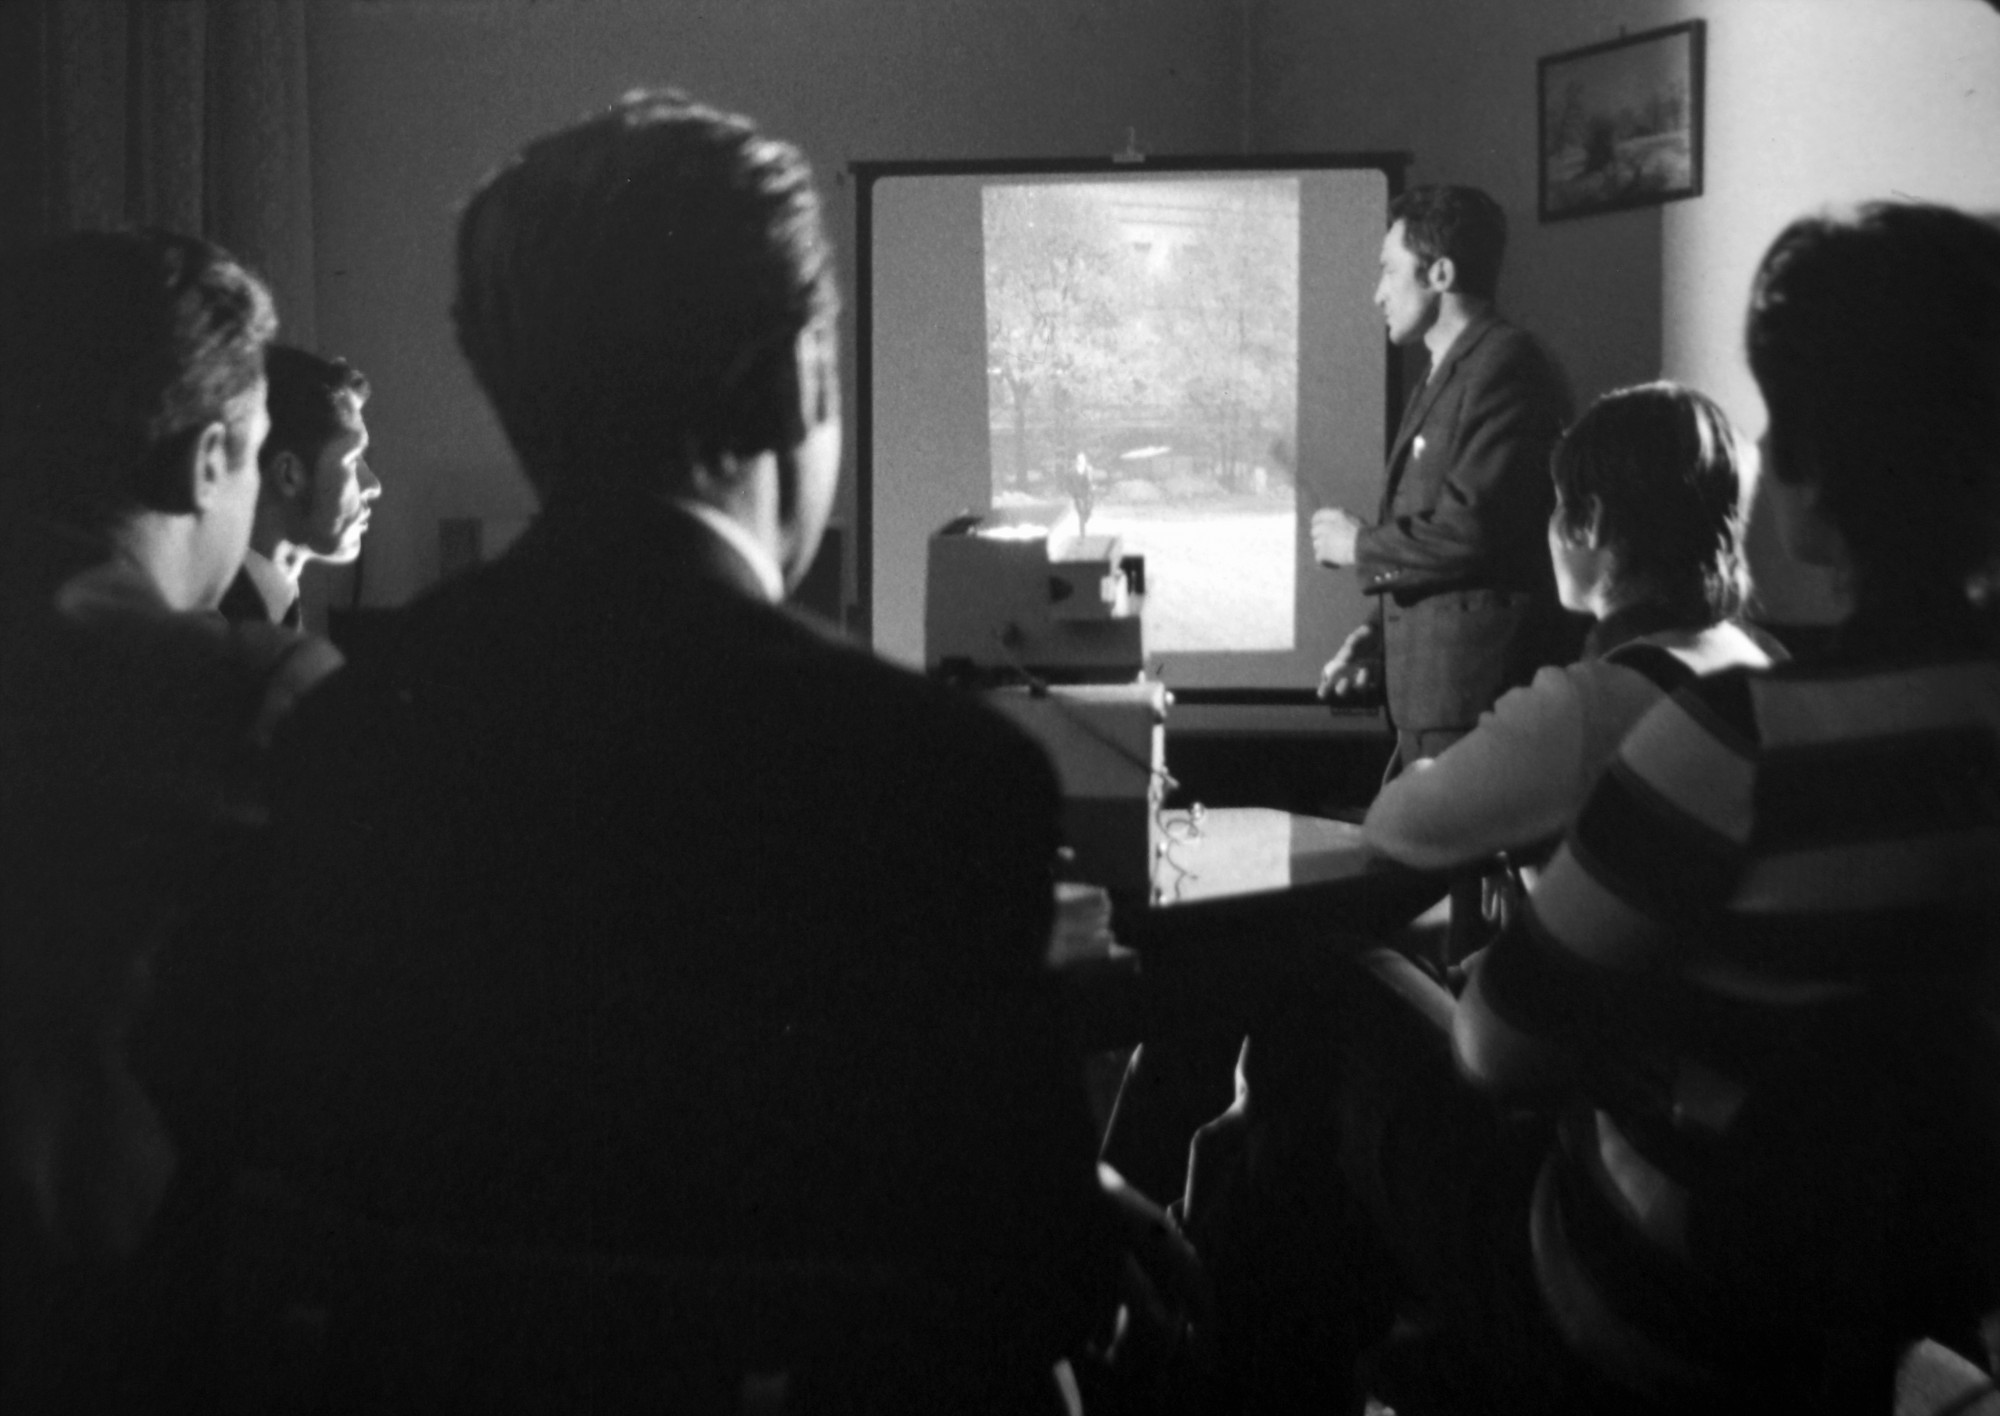 Az állambiztonság munkatársai operatív eszközzel készült titkos fotó kiértékelésén vesznek részt. Képkocka a Belügyminisztérium Filmstúdiójának oktatófilmjéből 1980-ból.